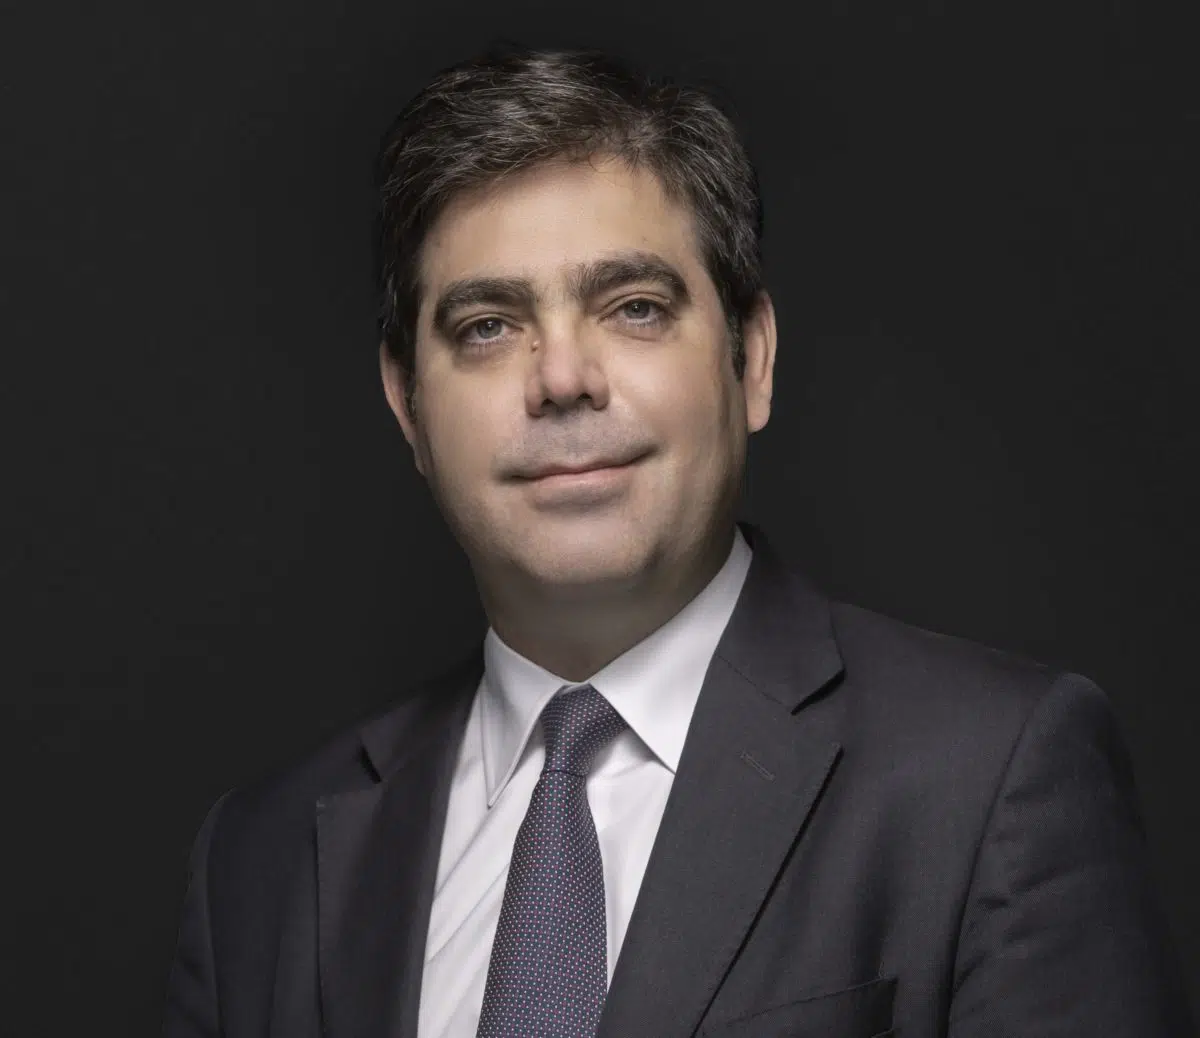 Santiago Hurtado, impulsor de la reforma concursal del 2011, refuerza el área de reestructuraciones de Simmons & Simmons